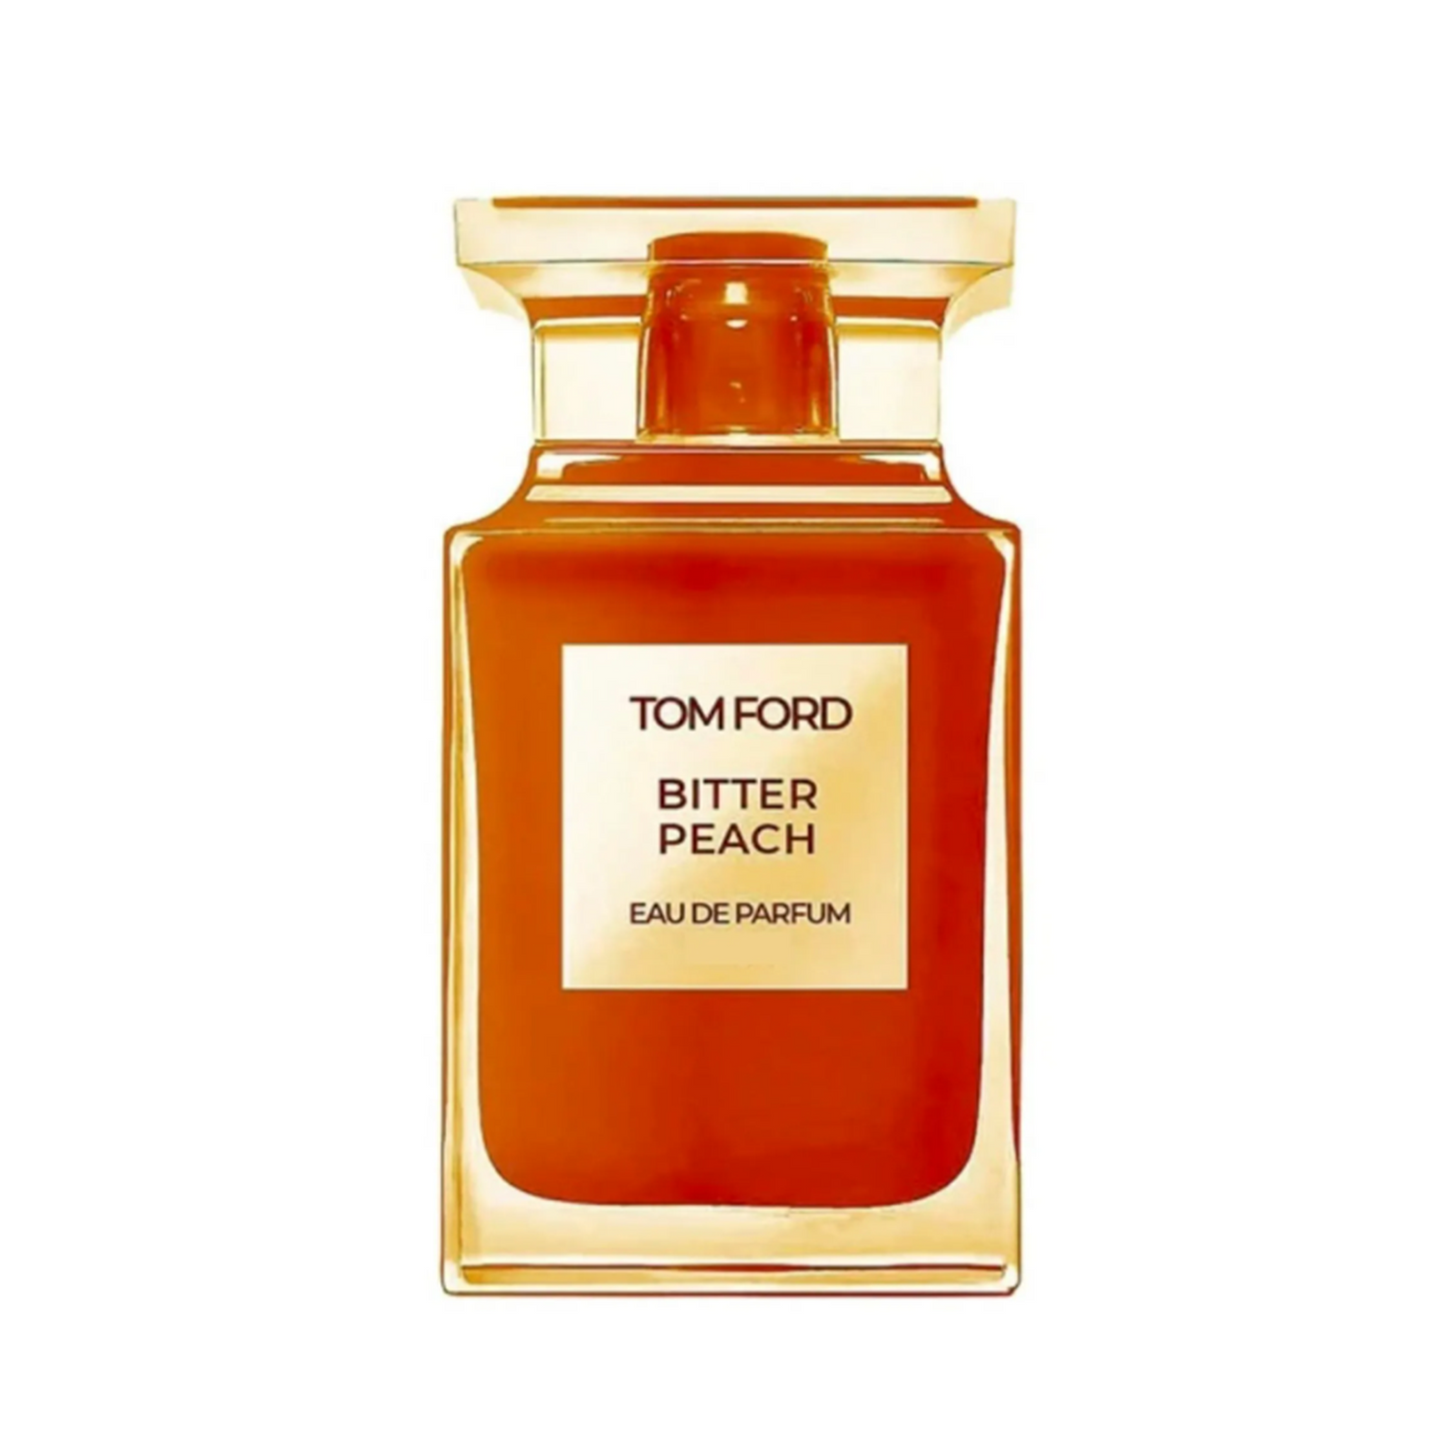 TOM FORD - Bitter Peach Duftprobe Parfümprobe Abfüllung